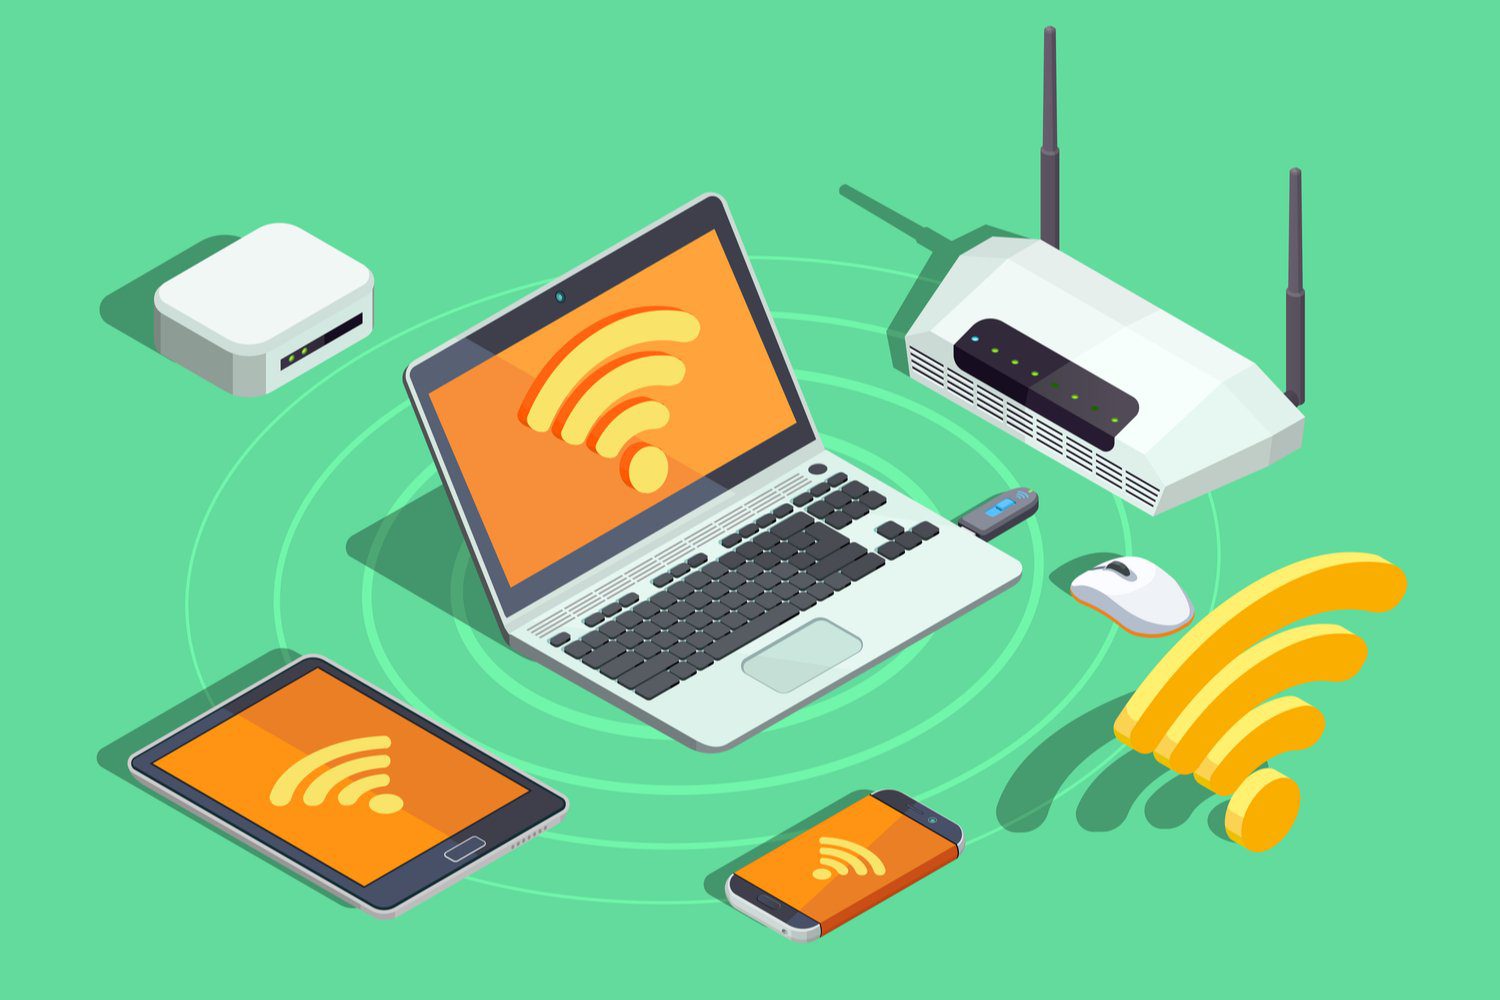 Thuiswerk zonder zorgen: vier voor betere wifi ITdaily.